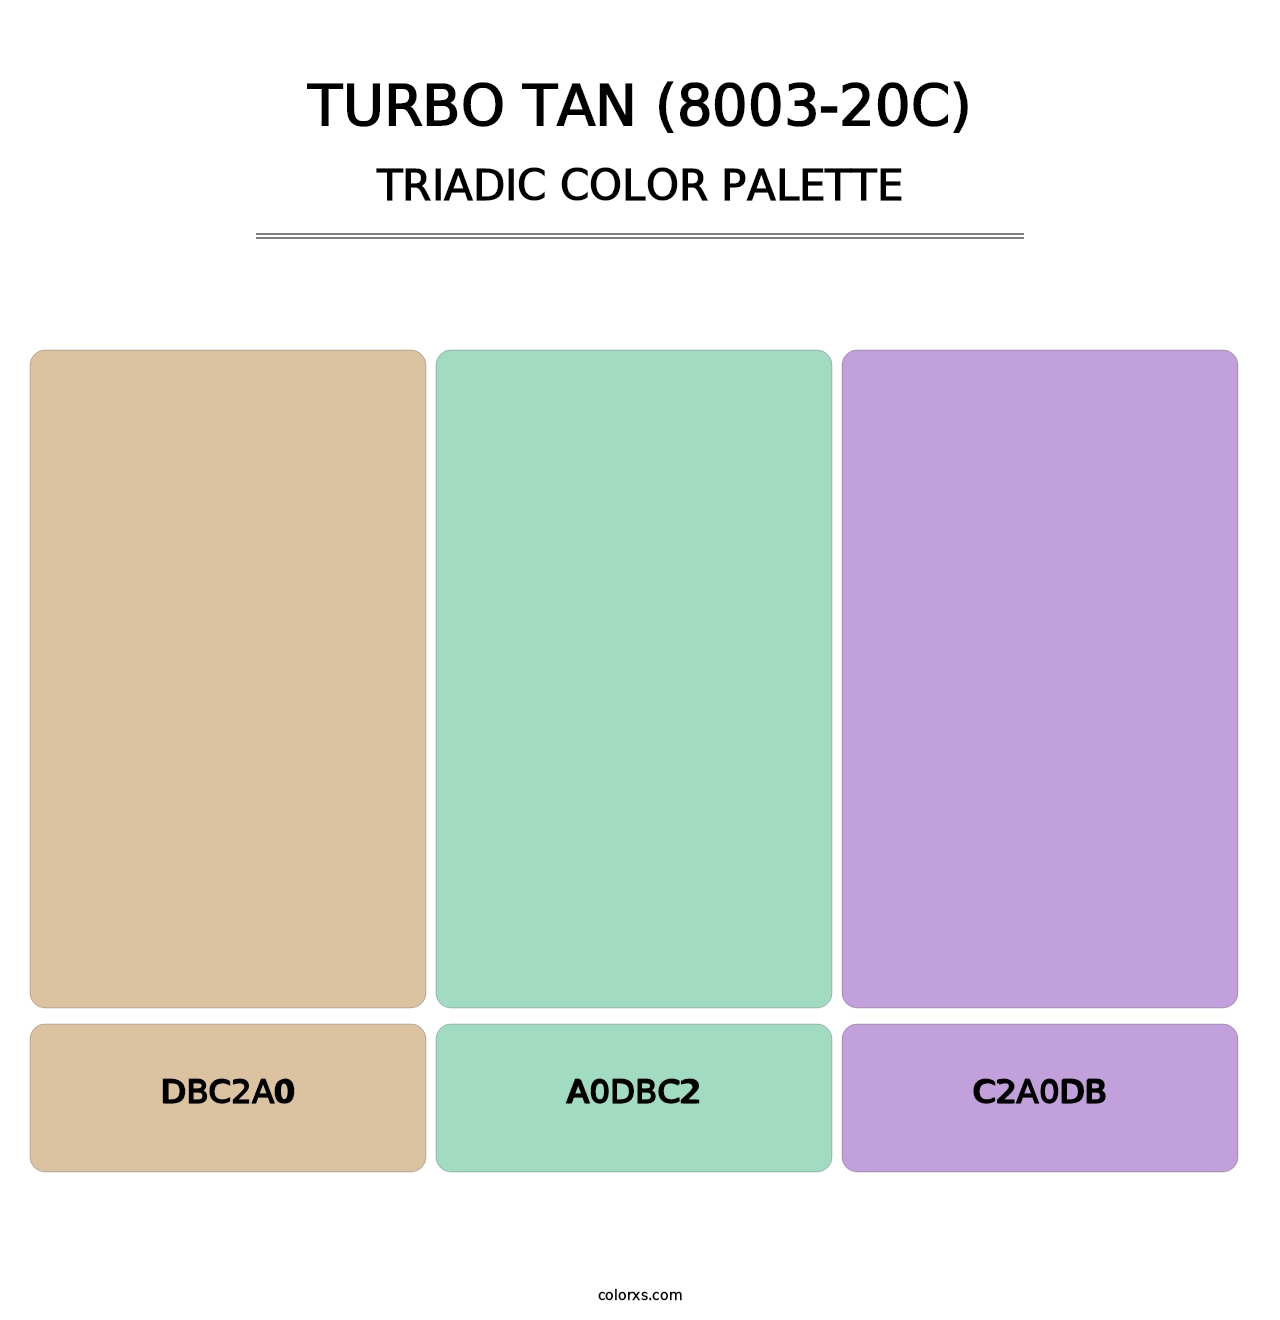 Turbo Tan (8003-20C) - Triadic Color Palette